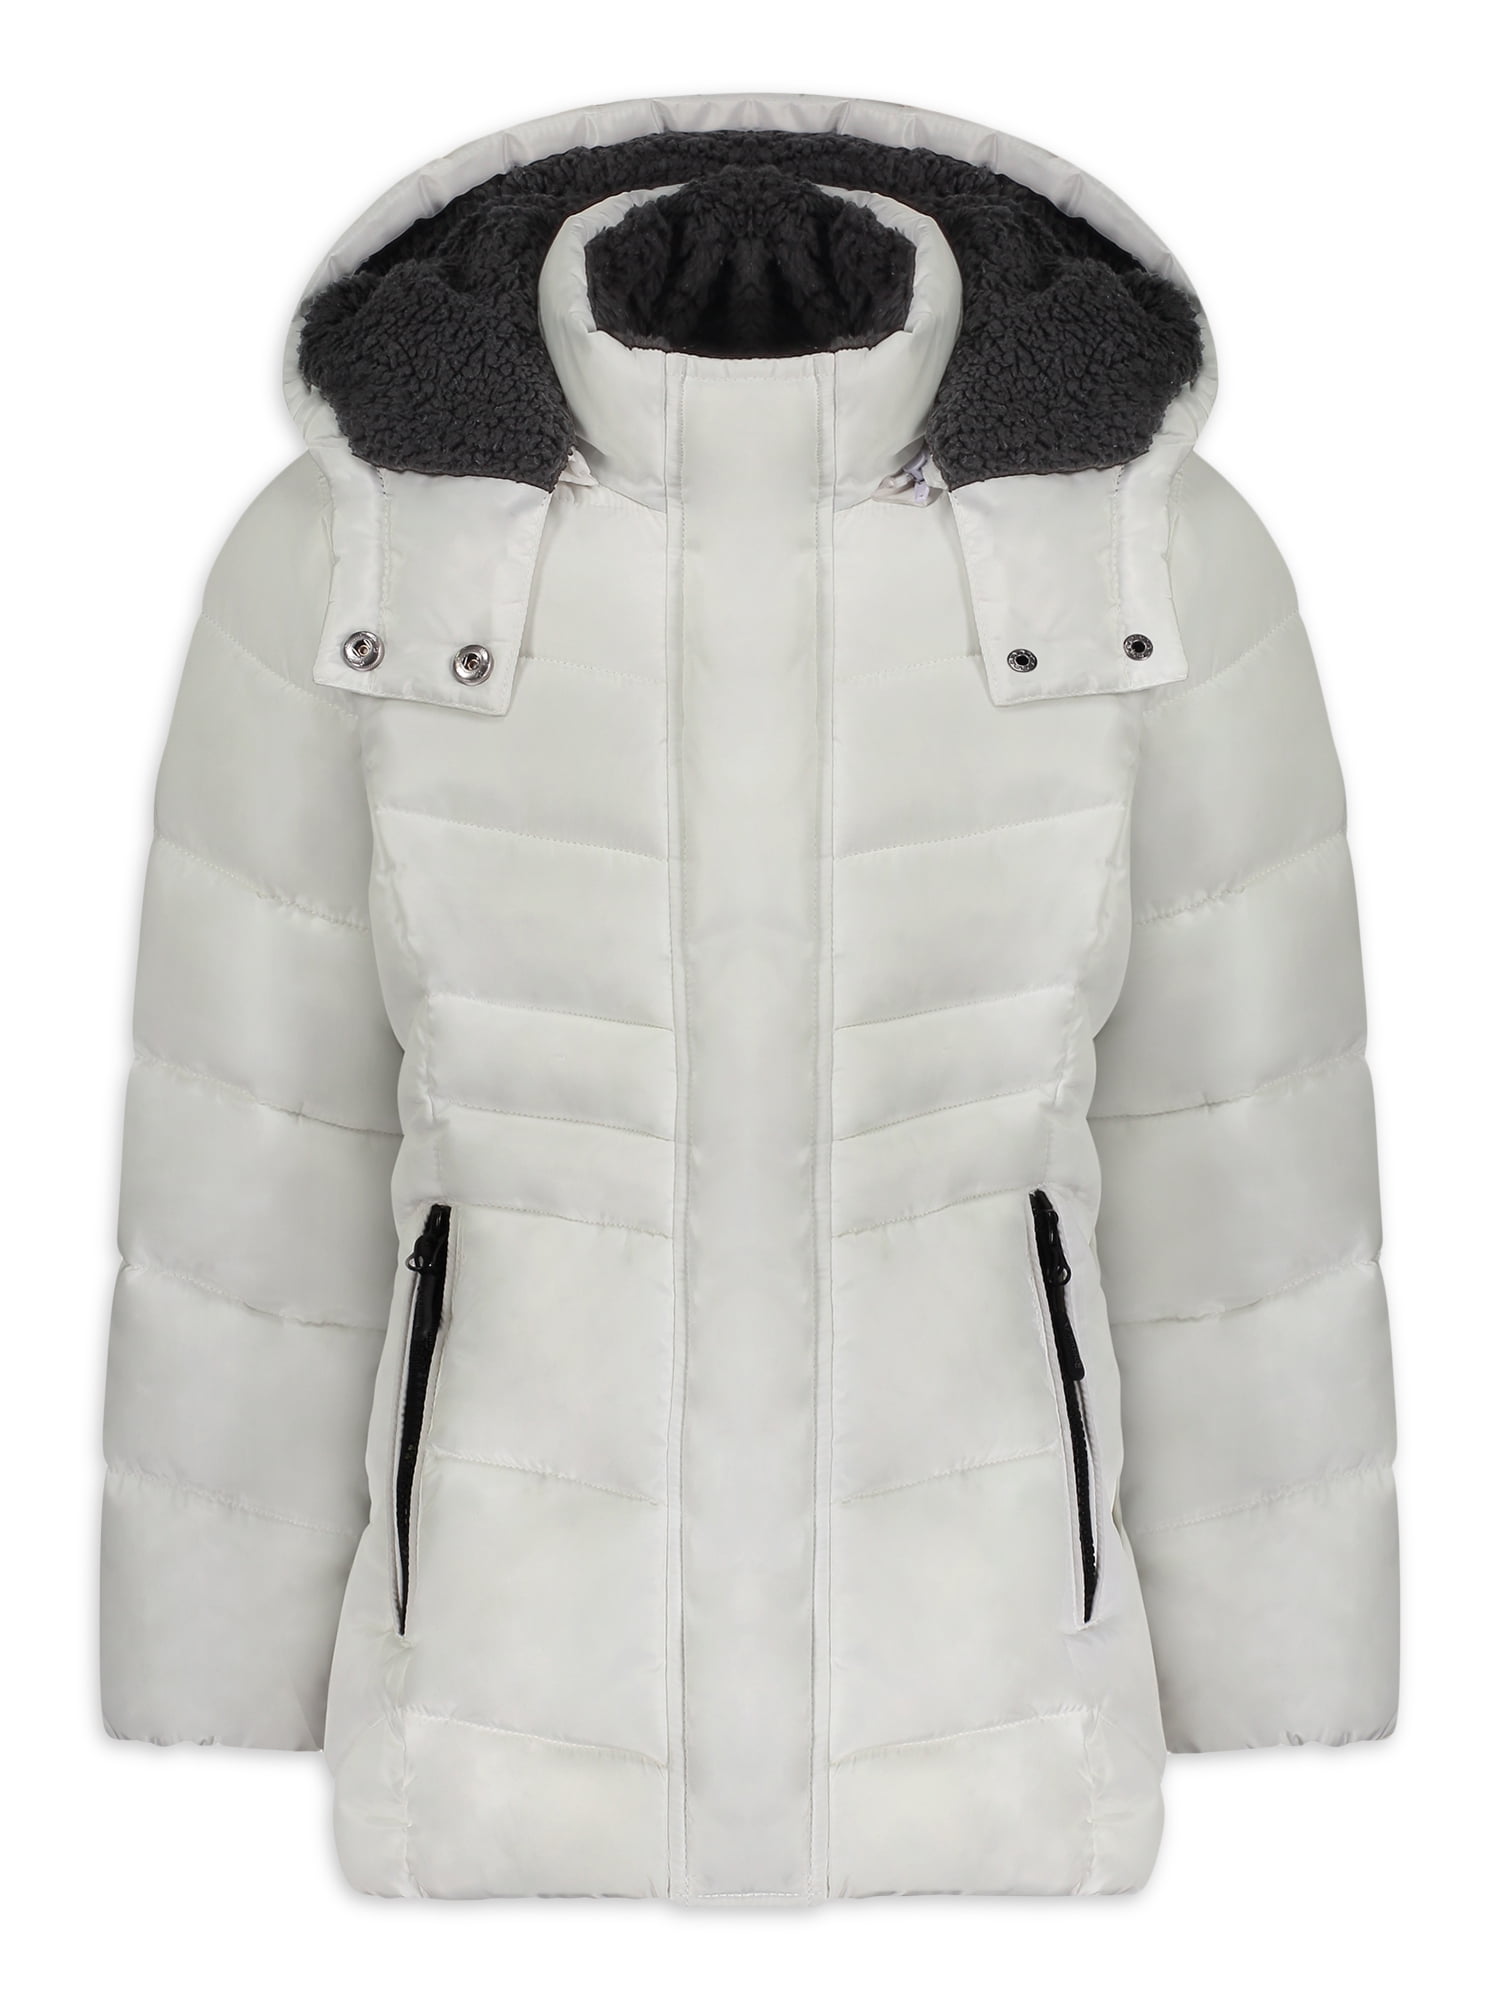 Kids Girls Boys Winter Hooded Coat Padded Warm Faux Fur Trim Hoodie Puffer Down Jack Outwear